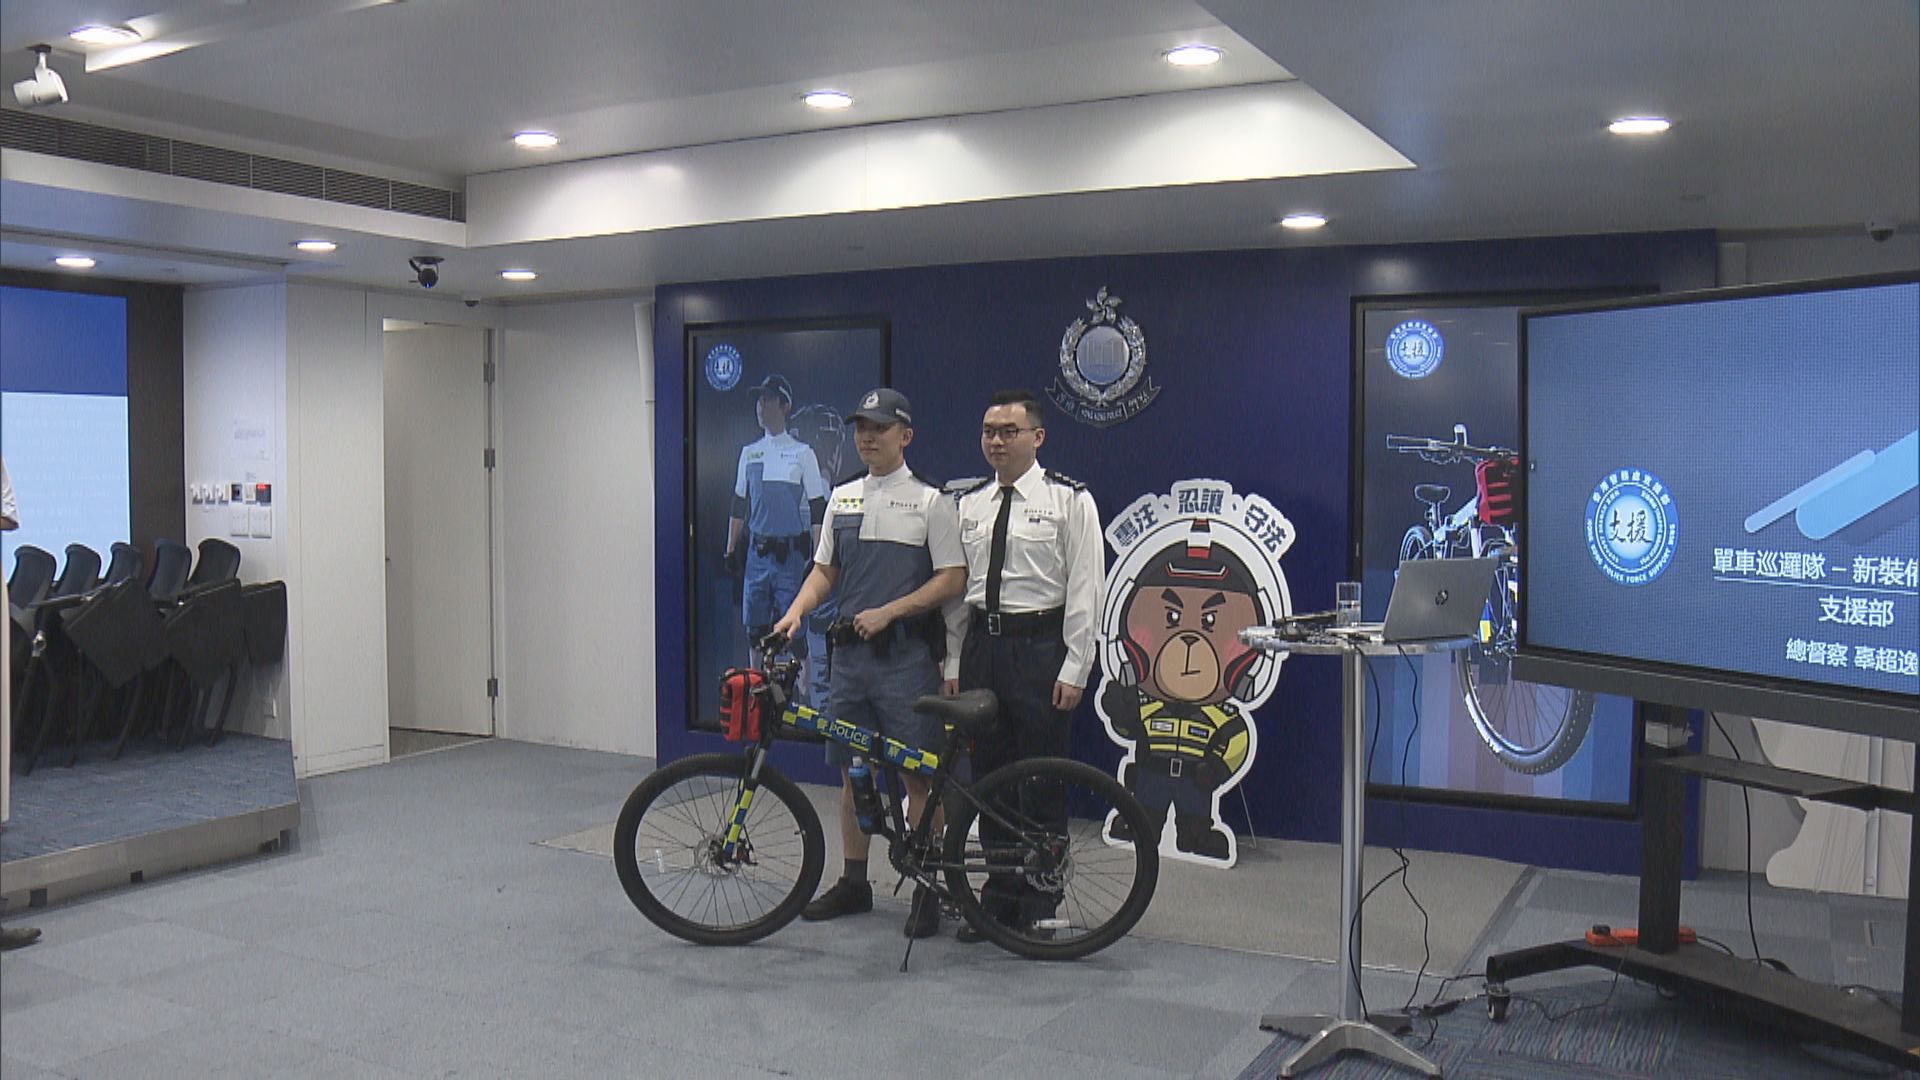 警察單車巡邏隊下周一試行新制服及裝備 提高安全意識